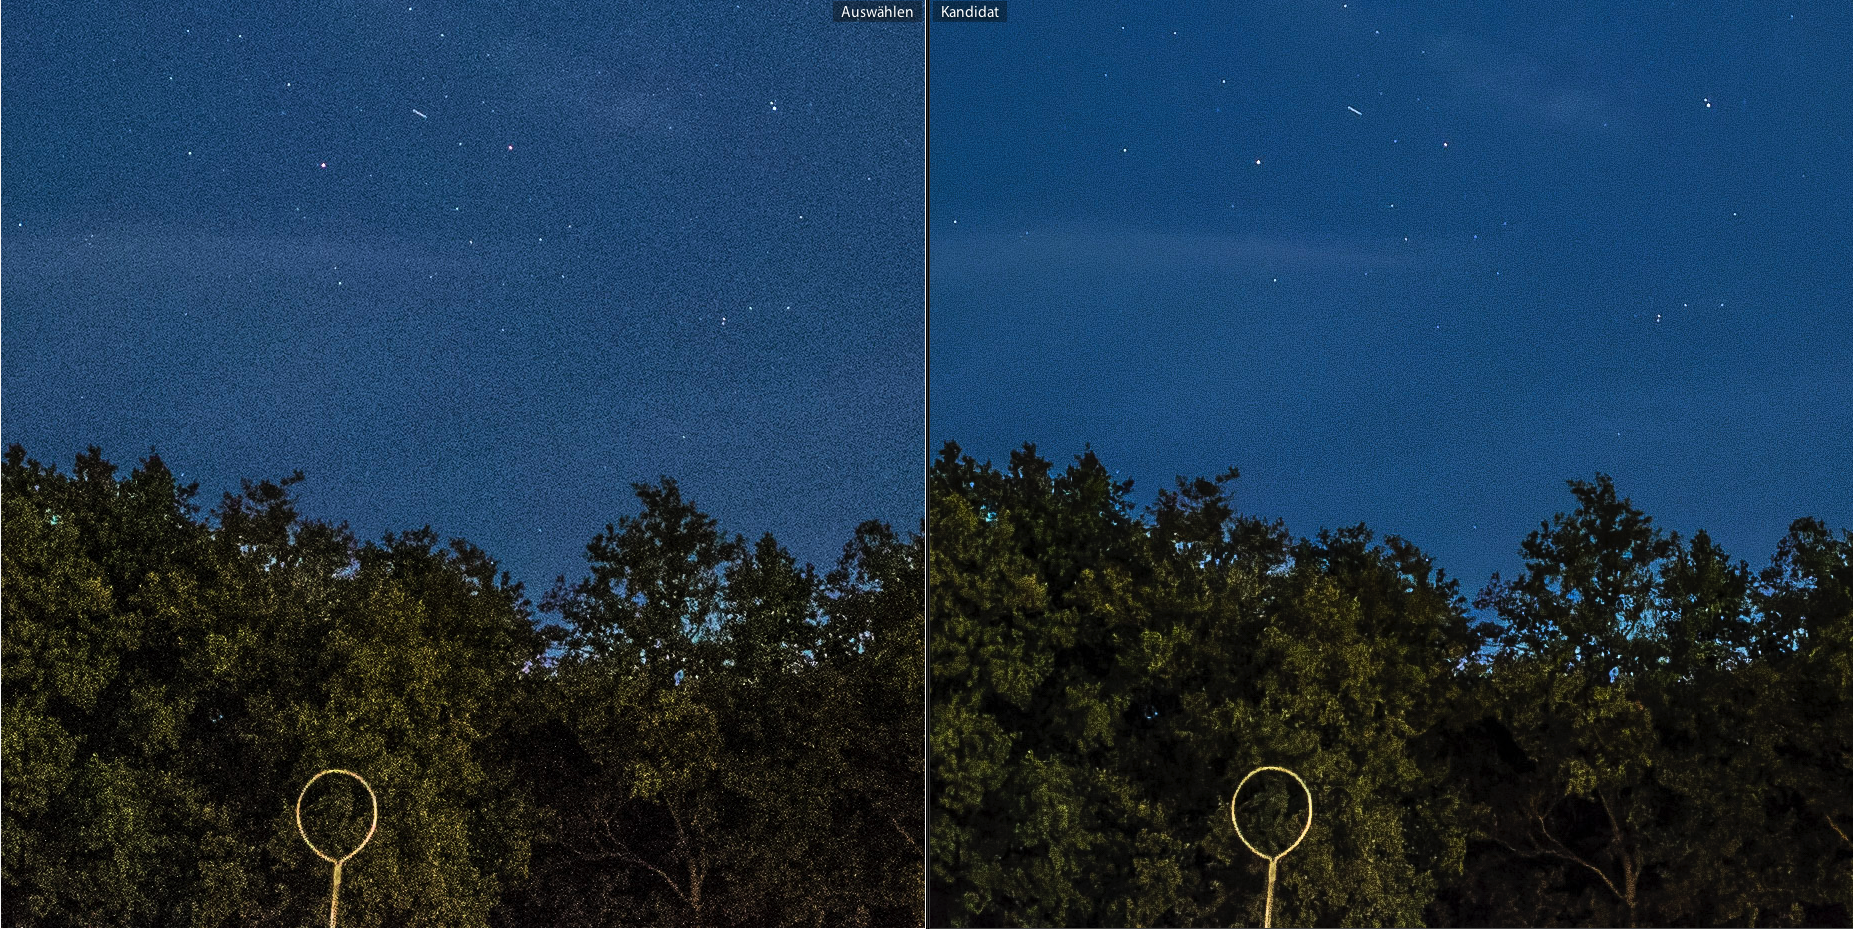 Detail des Nachthimmel-Fotos im Vergleich: Links scharf, aber verrauscht, rechts rauschärmer, aber etwas verwaschen